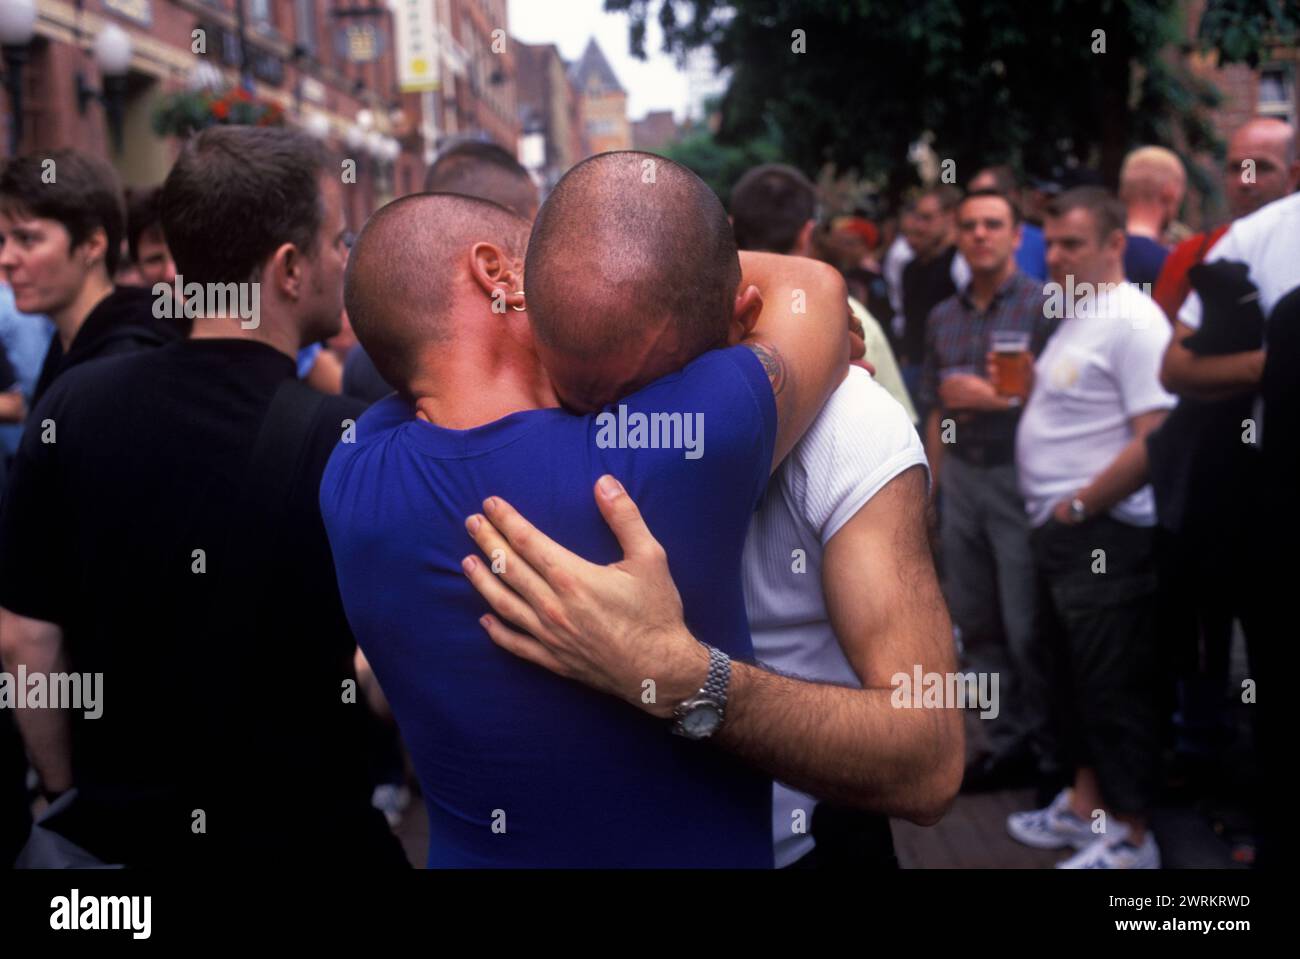 Los hombres homosexuales comparten su dolor en los 1990 del Reino Unido. El festival anual del Orgullo Gay se celebra en Canal Street durante el desfile anual del Gayfest, los hombres se abrazan y se sostienen, recordando a amigos que han muerto recientemente de SIDA. Festival del Orgullo de Manchester, Lancashire Inglaterra 1999. HOMER SYKES Foto de stock